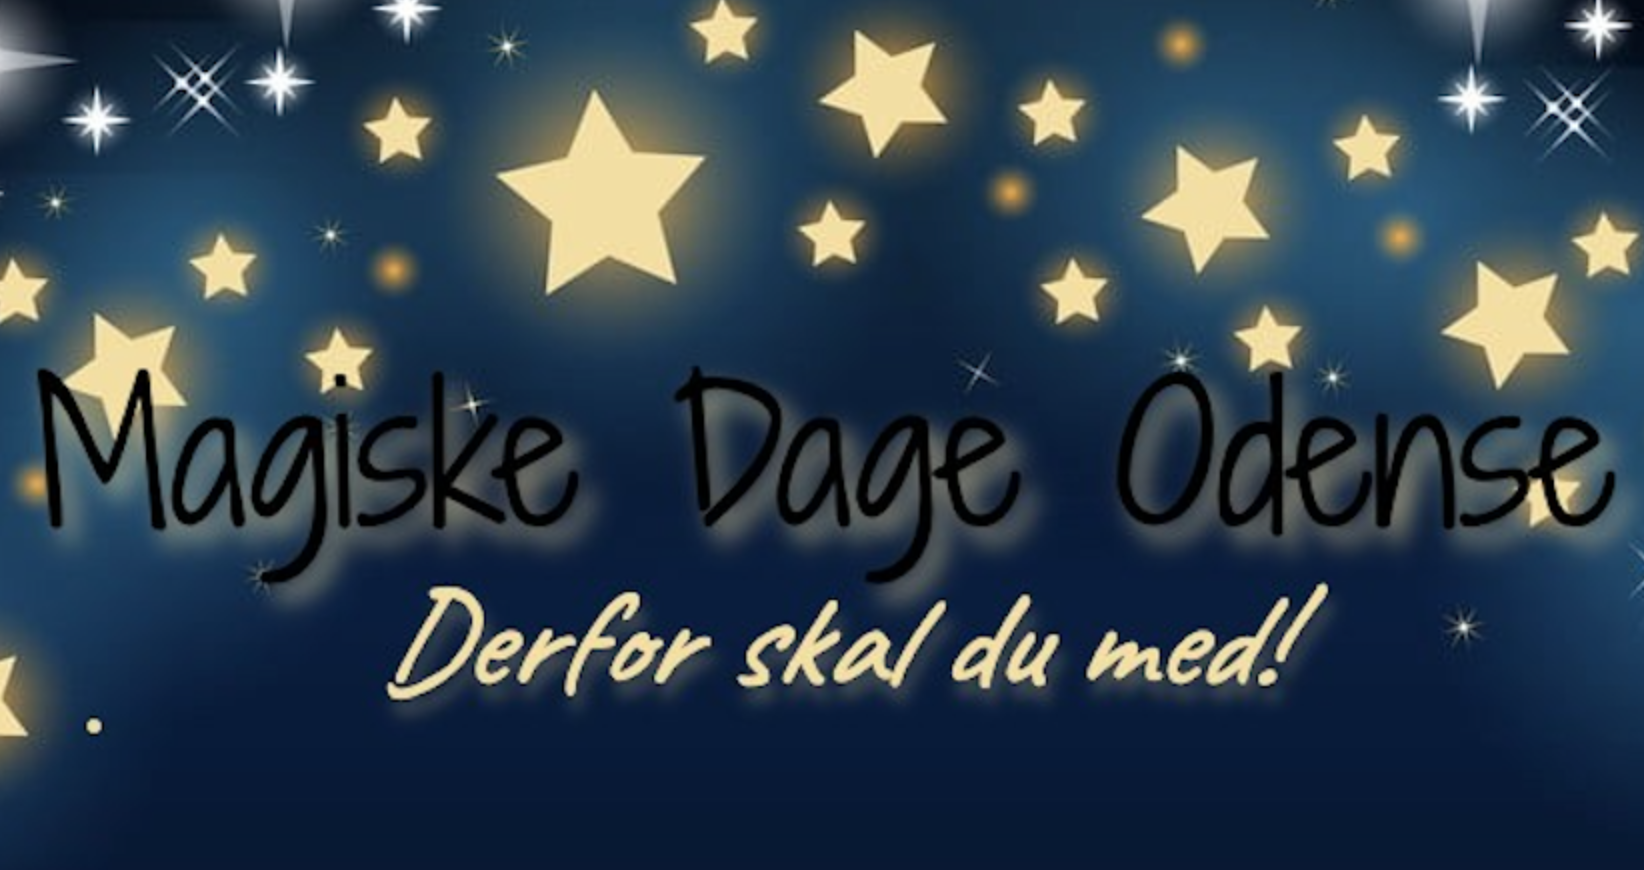 Magiske Dage Odense - Derfor skal du tage med!